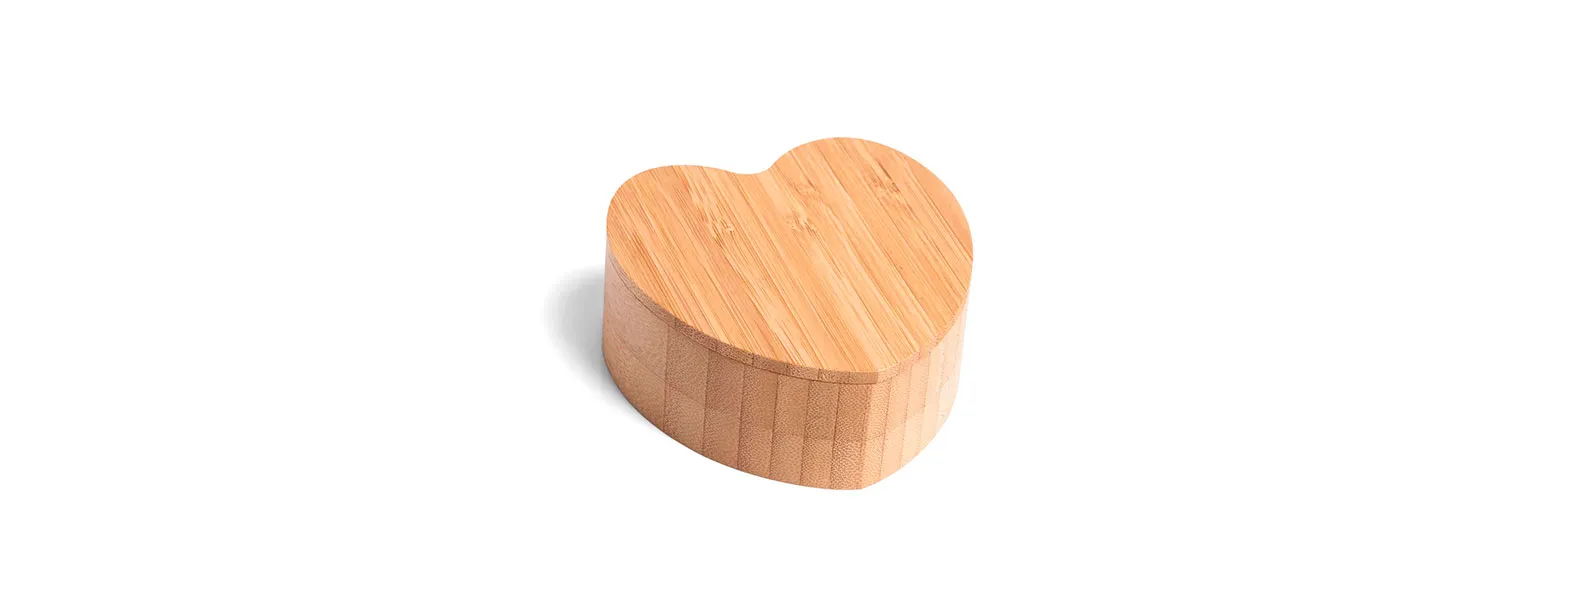 Saleiro em Bambu com formato de coração.